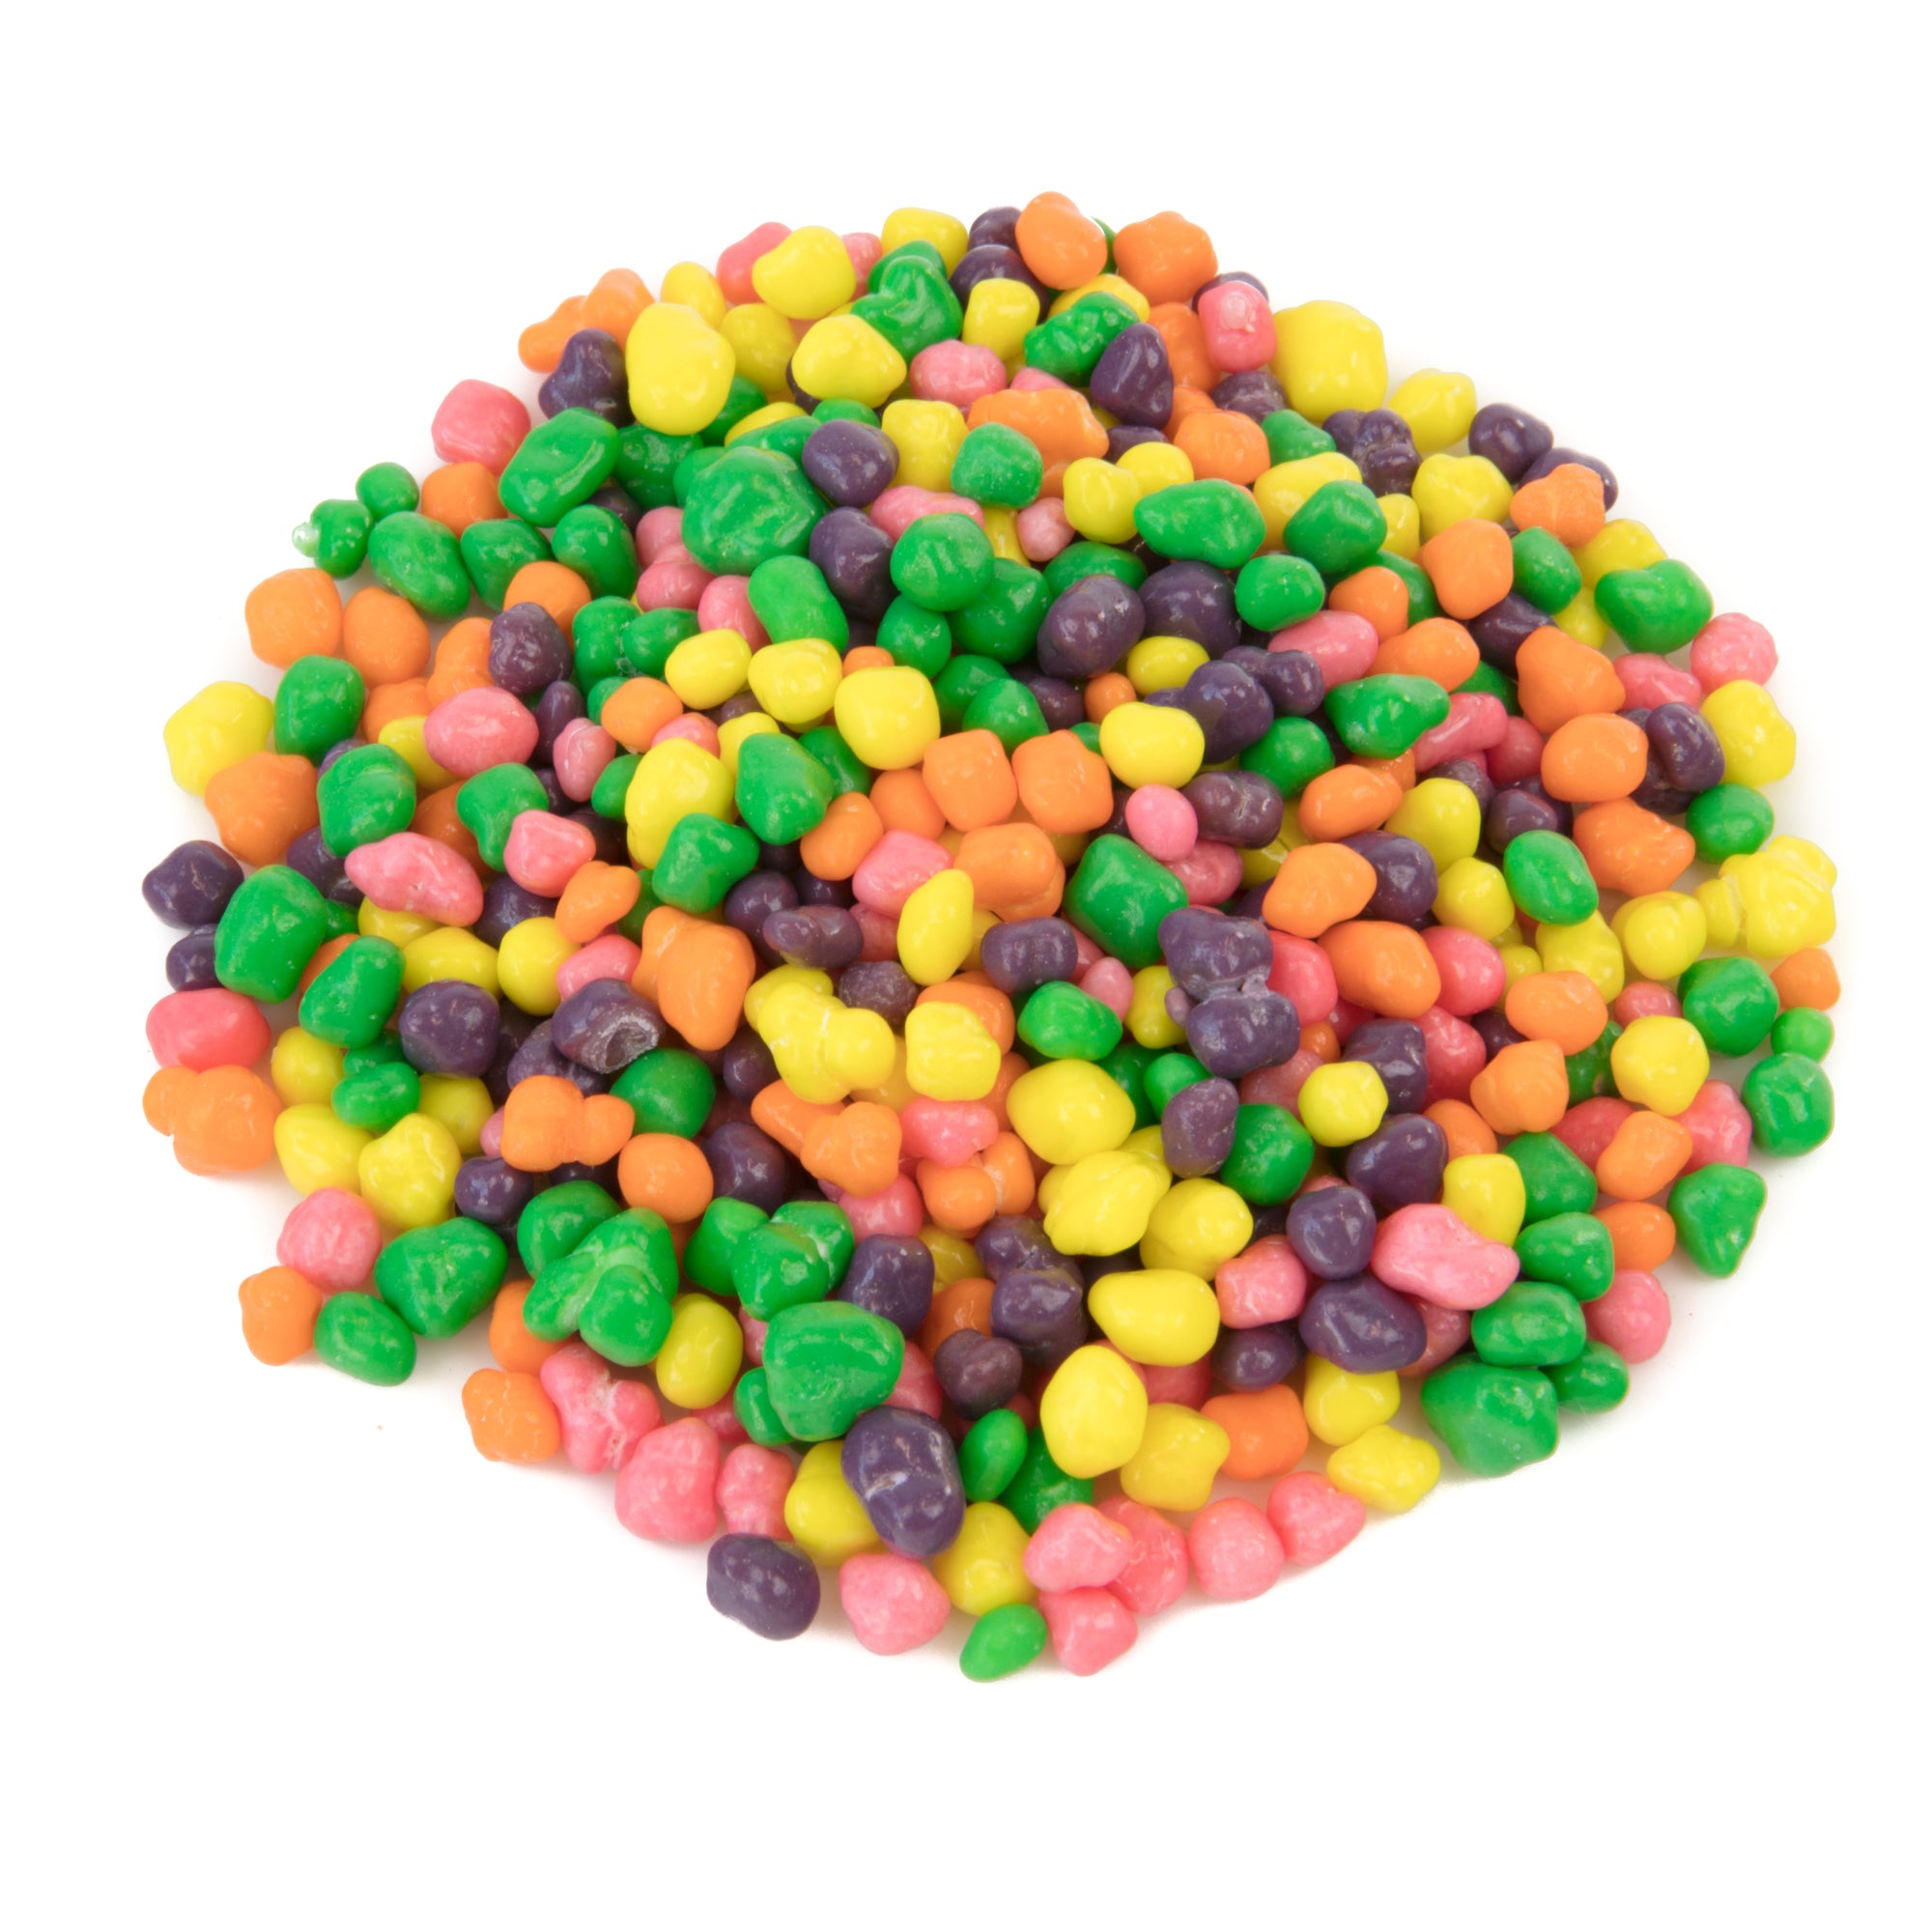 10# Box Wonka Rainbow Nerds